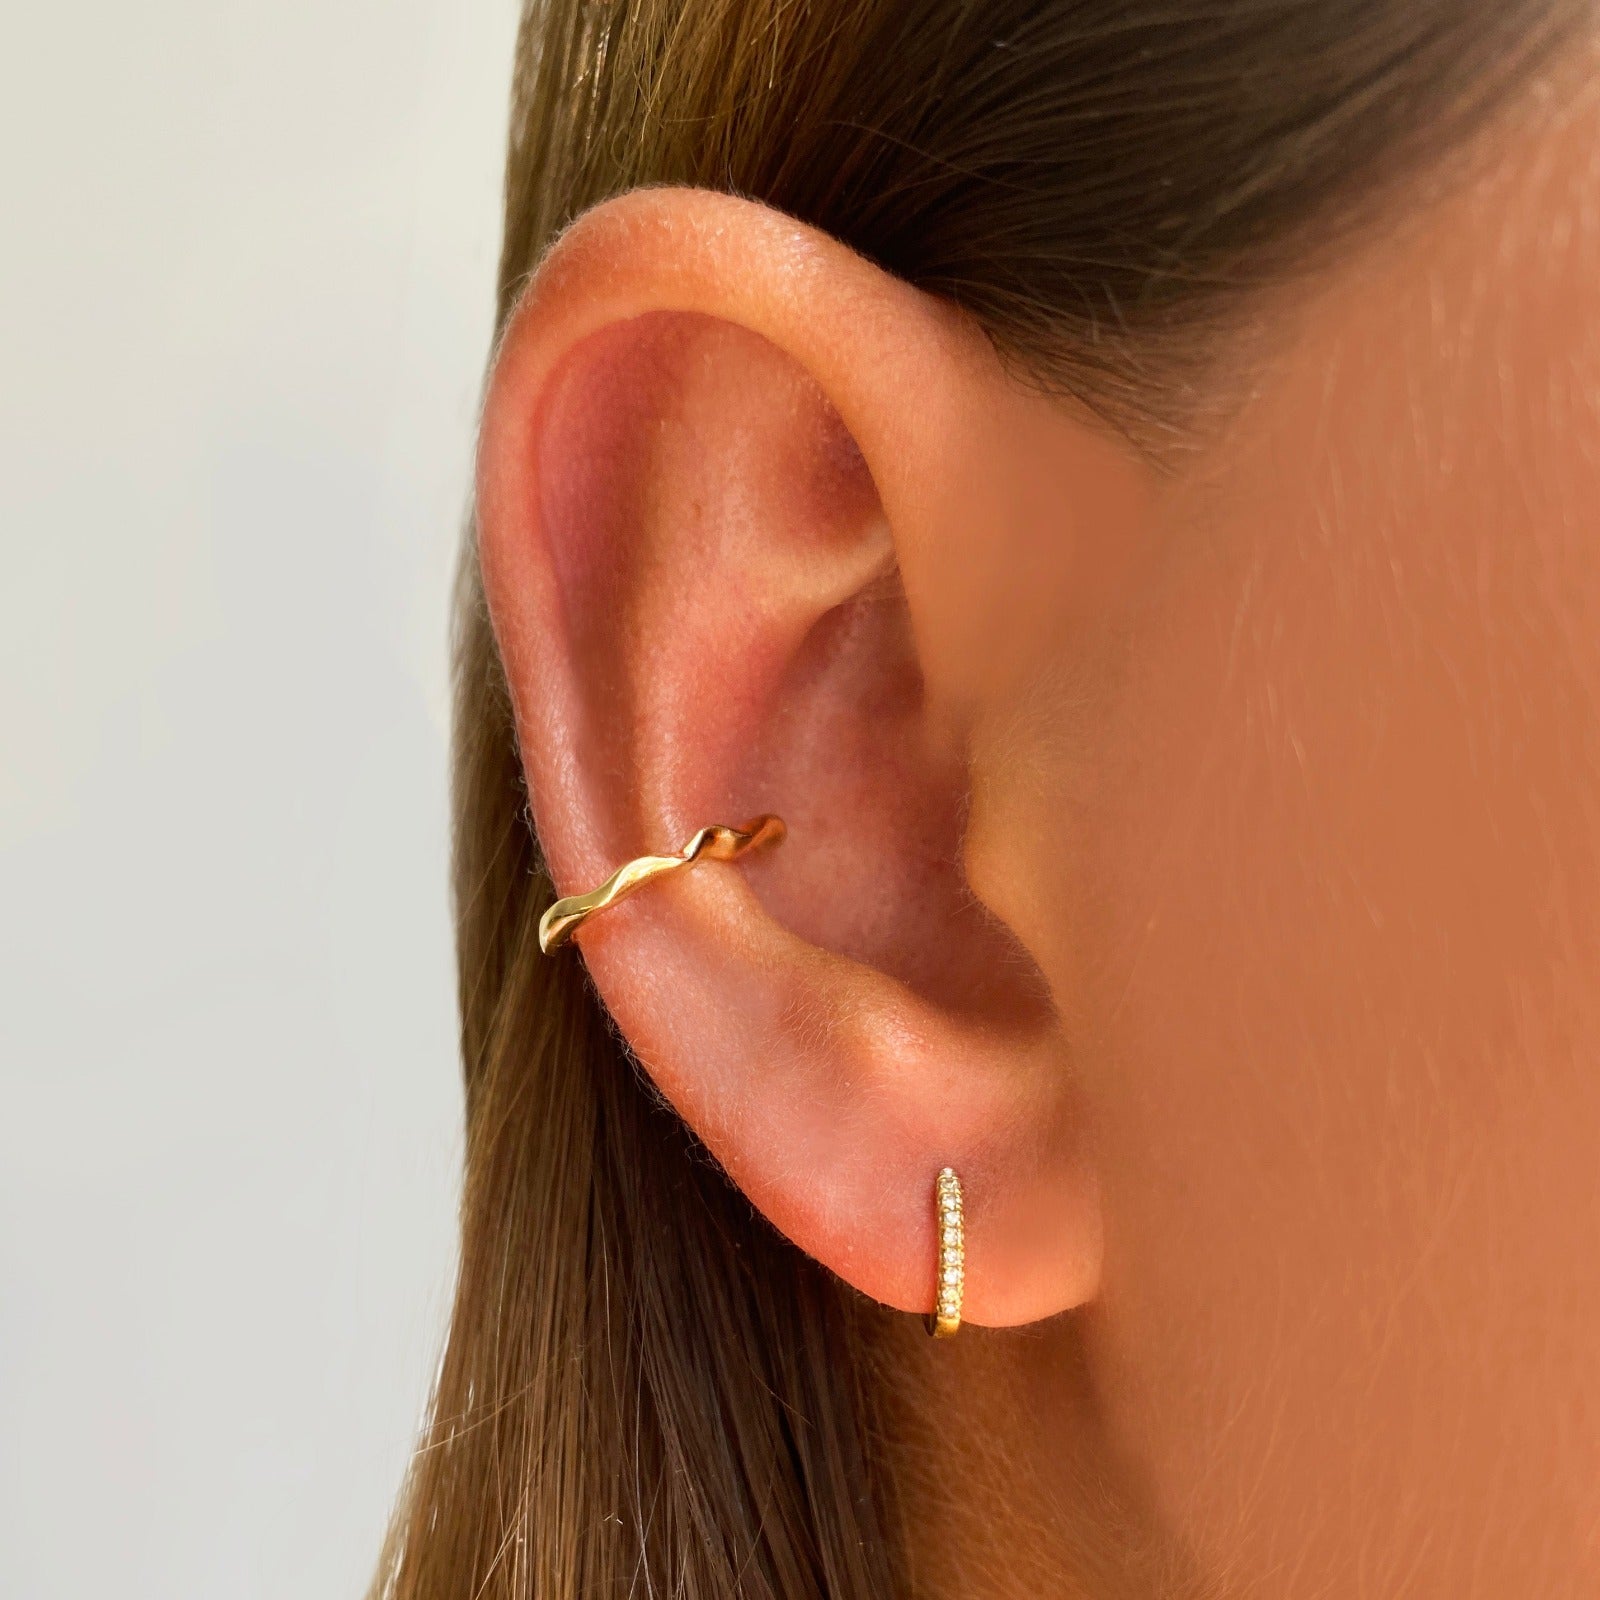 14k gold Ripple Midi Ear Cuff styled on a ear